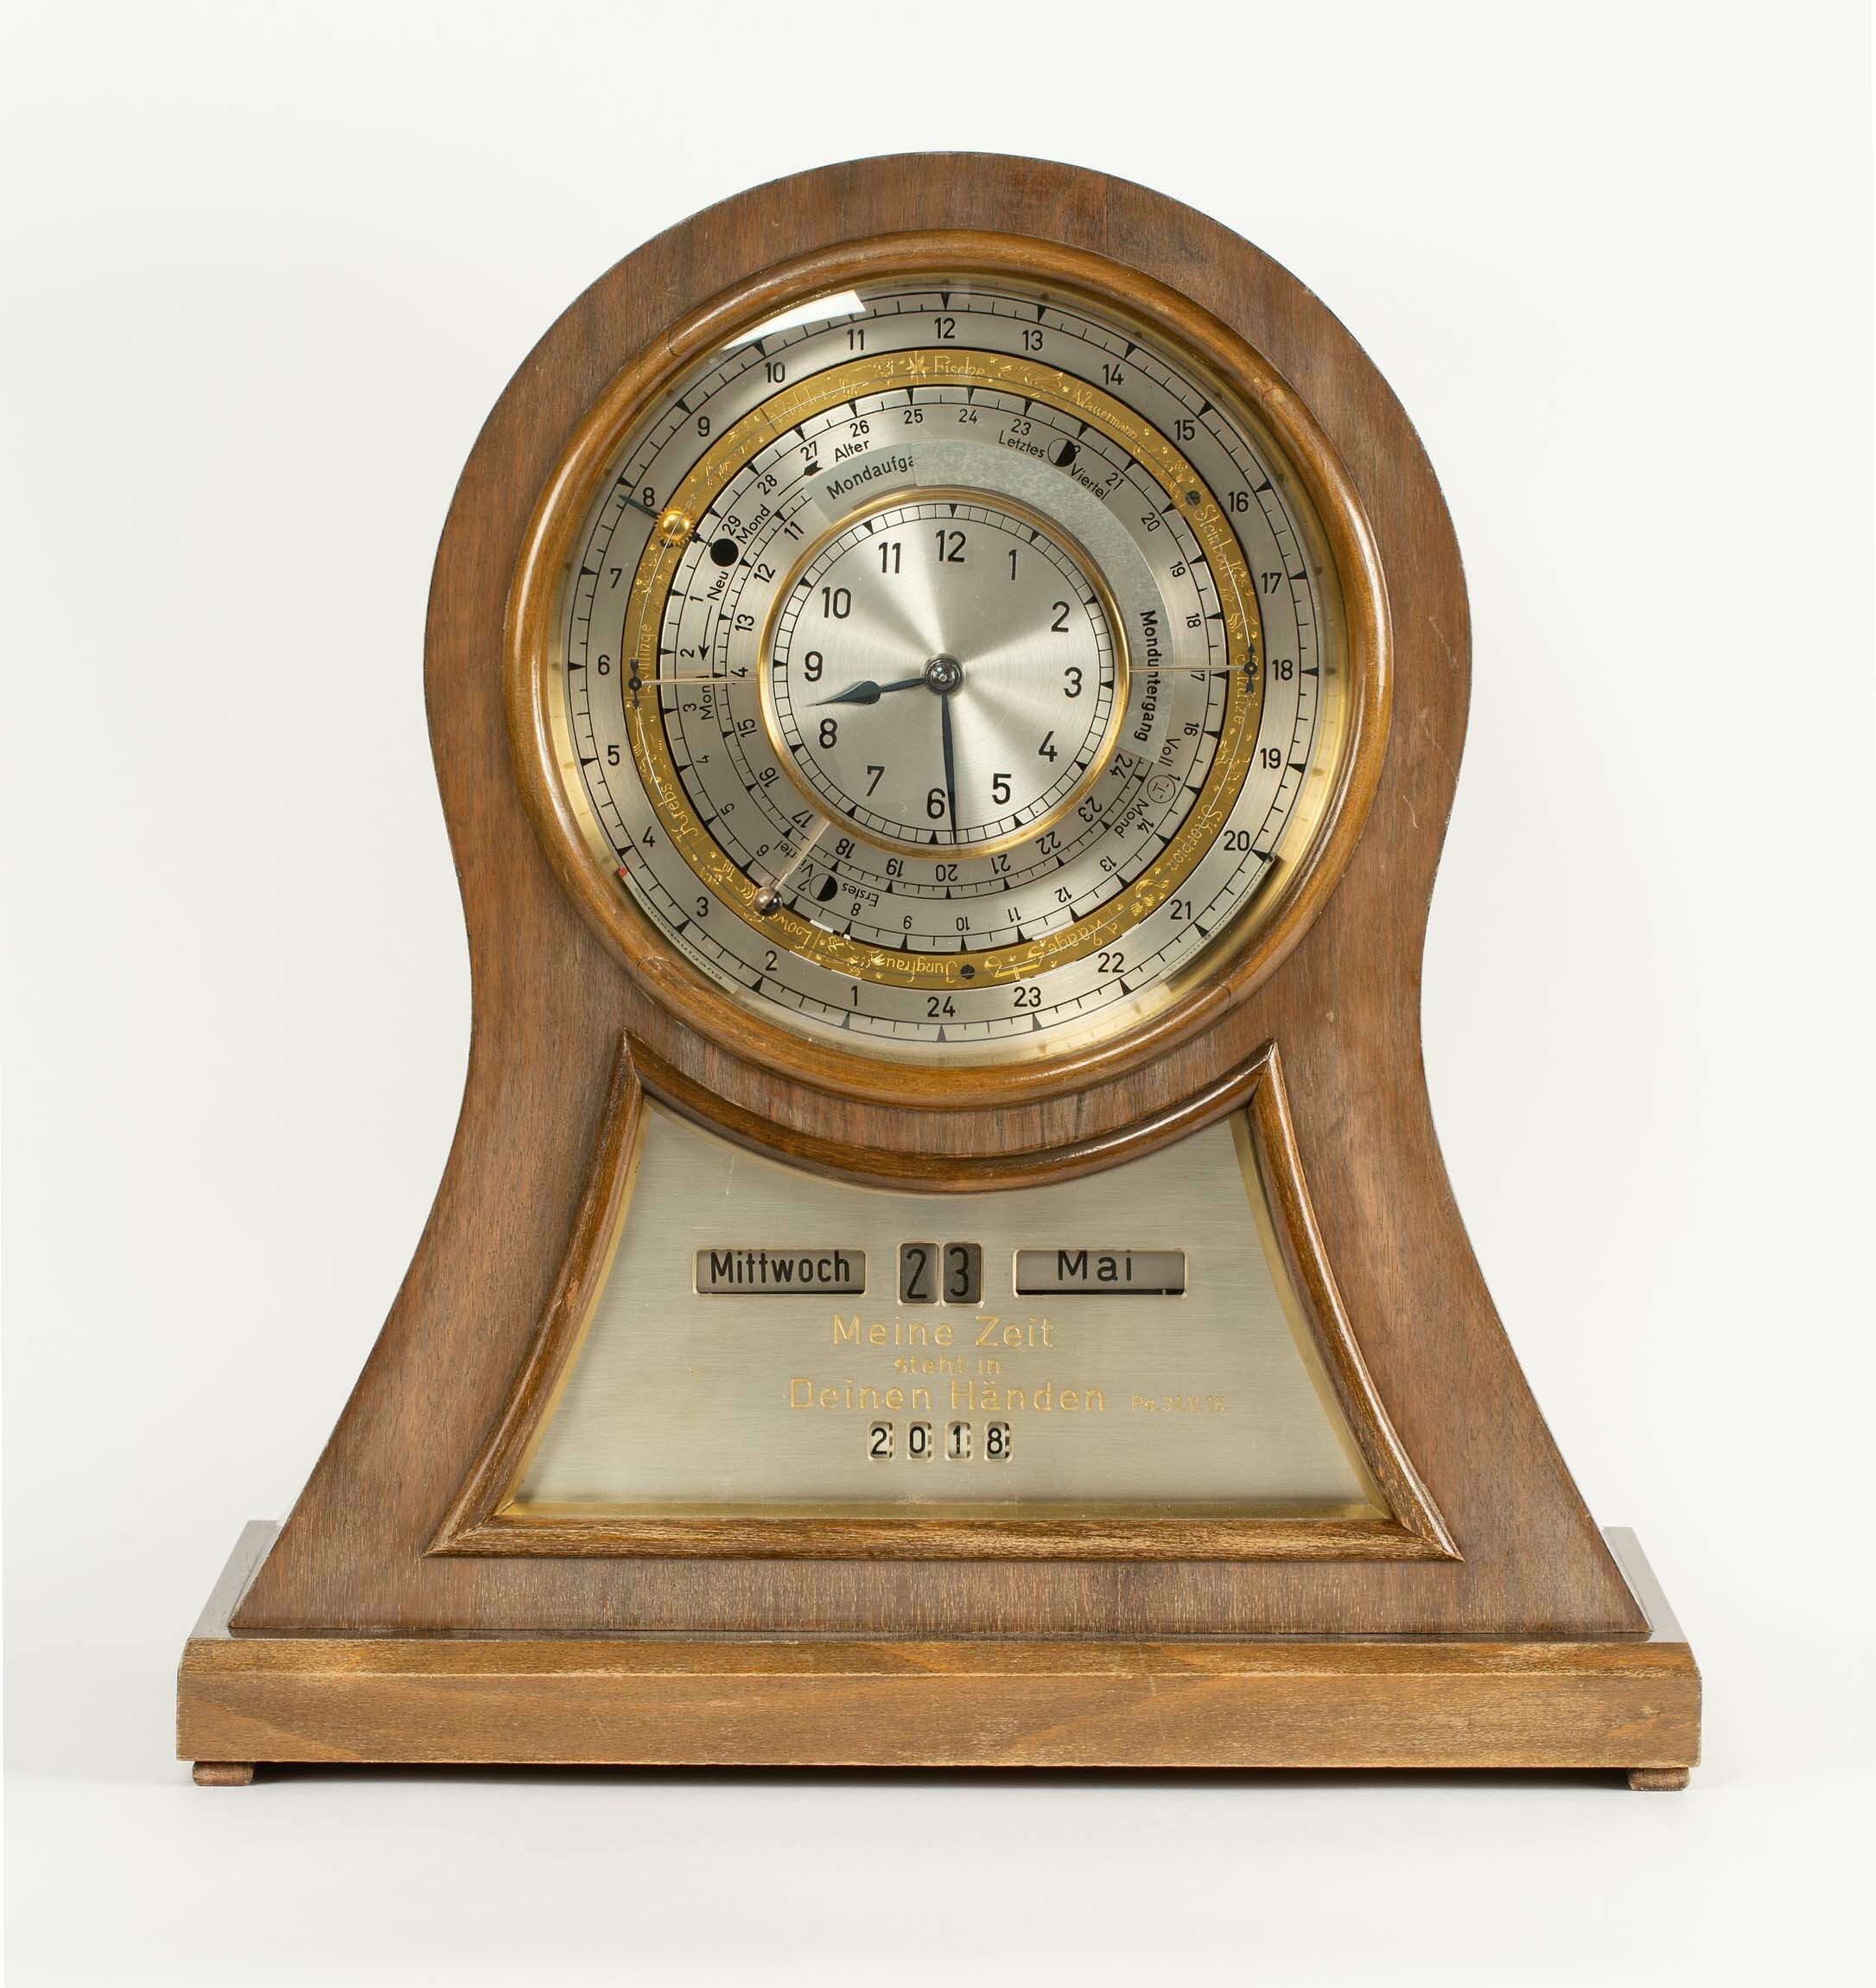 Uhr mit Kalender und astronomischen Anzeigen, Christoph Jäckle, St. Georgen, um 1950 (Deutsches Uhrenmuseum CC BY-SA)